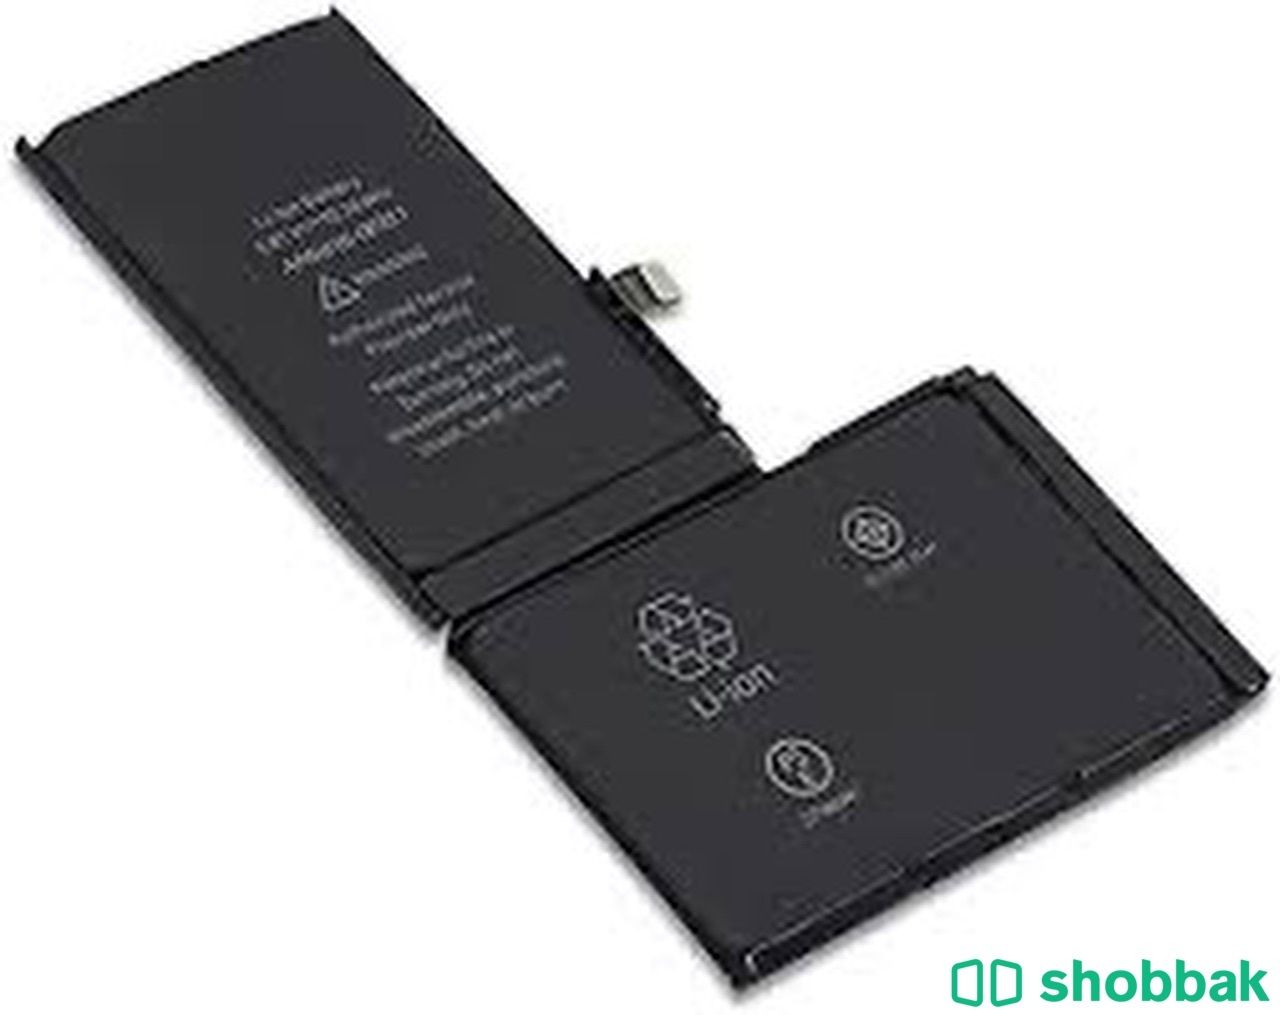 بطارية ايفون اكس (X x 10)  .  IPhone (X x 10) battery Shobbak Saudi Arabia